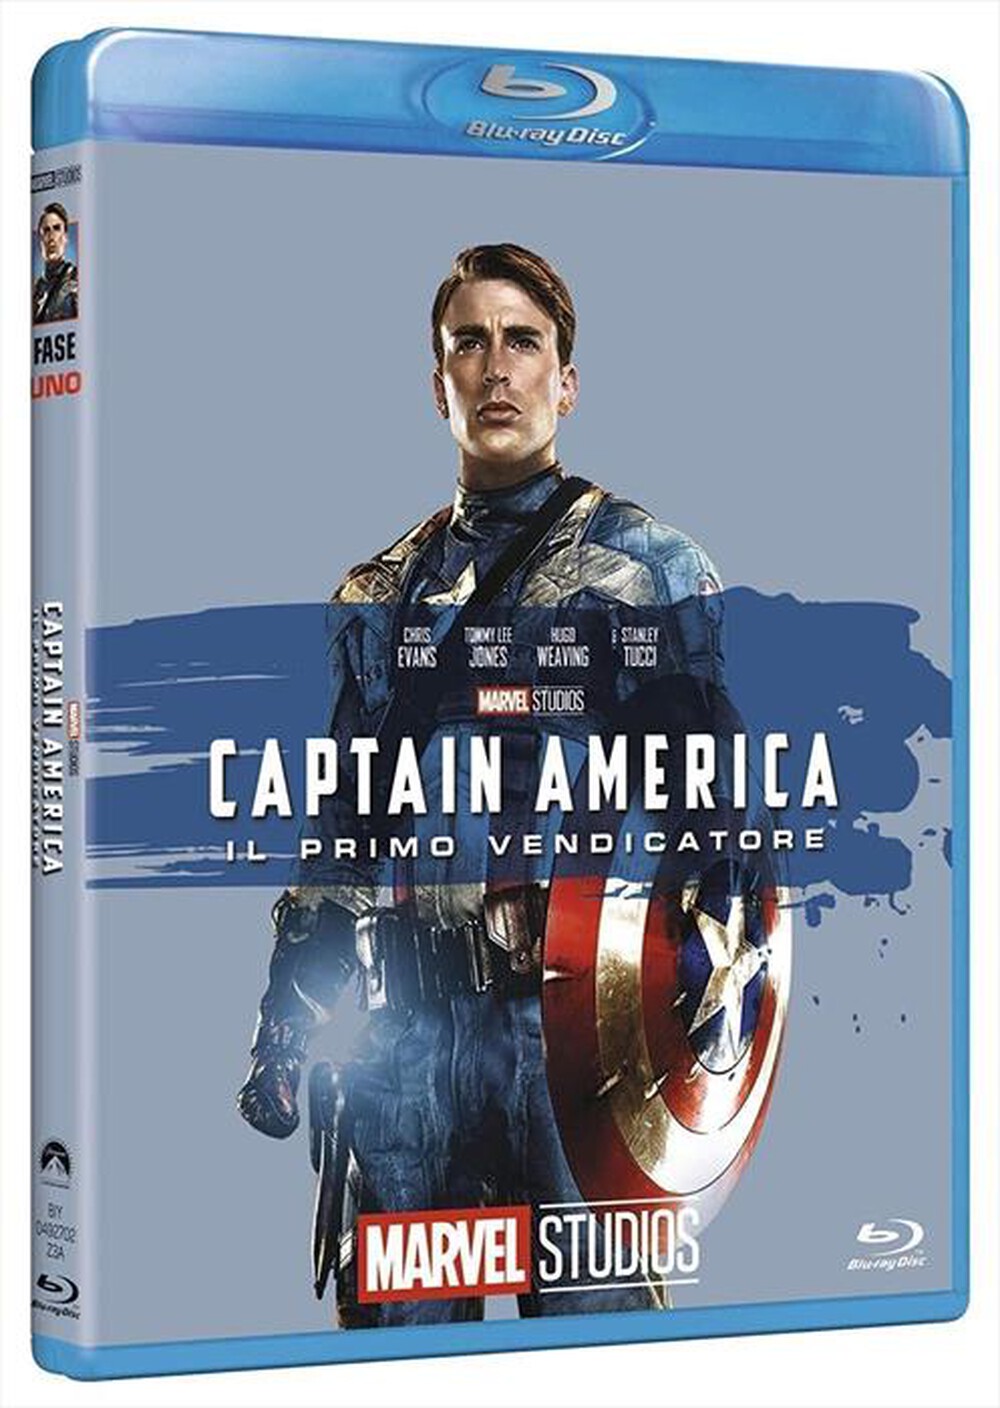 "EAGLE PICTURES - Captain America (Edizione Marvel Studios 10 Anni"